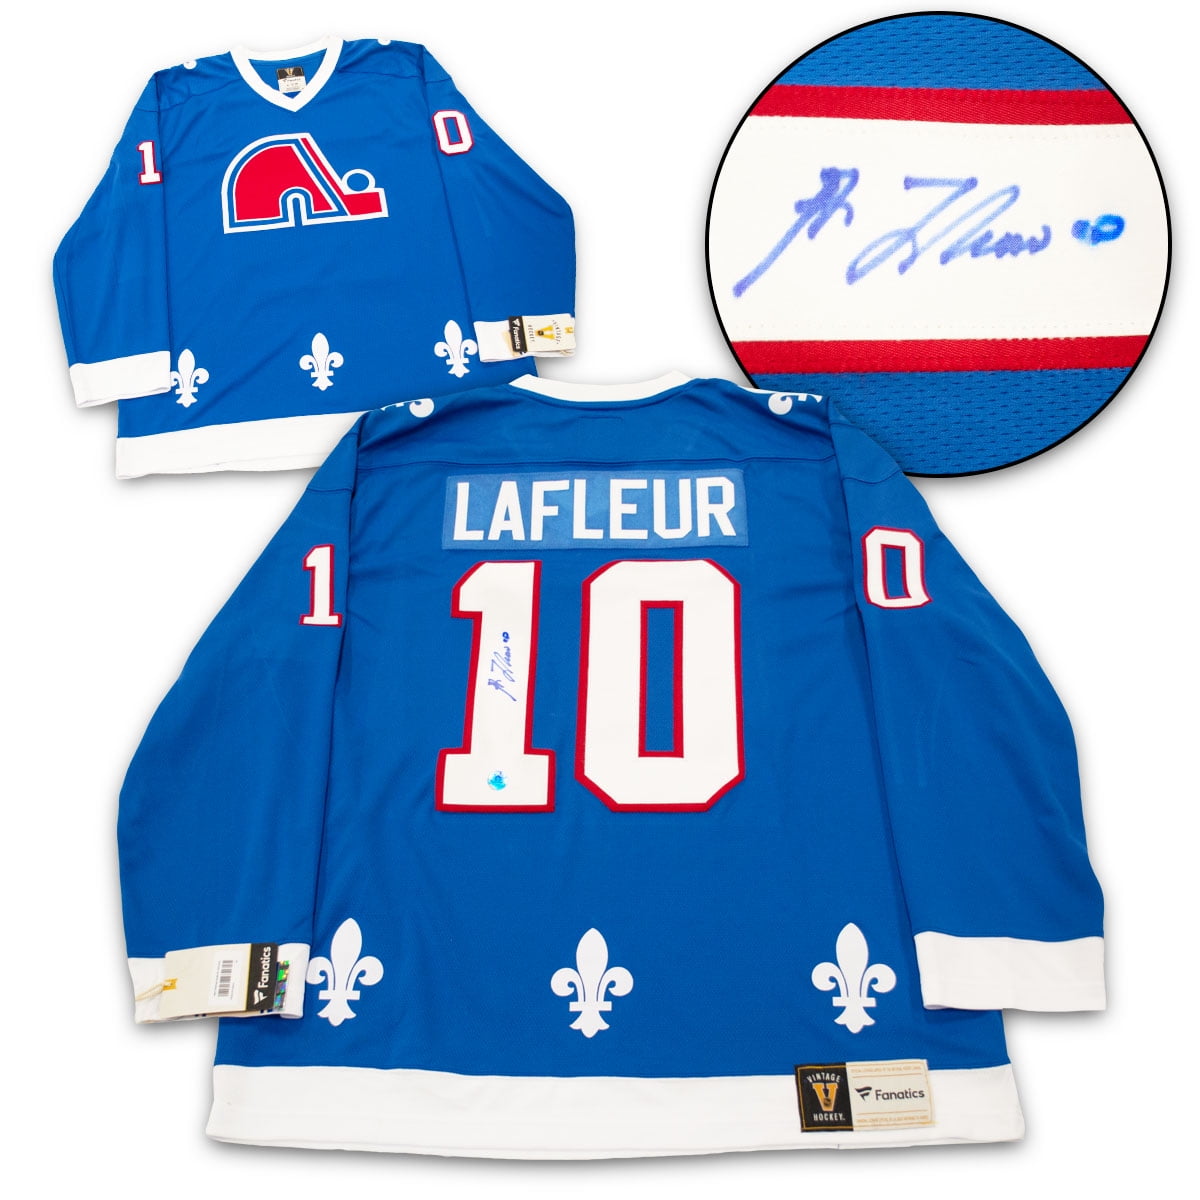 guy lafleur jersey number